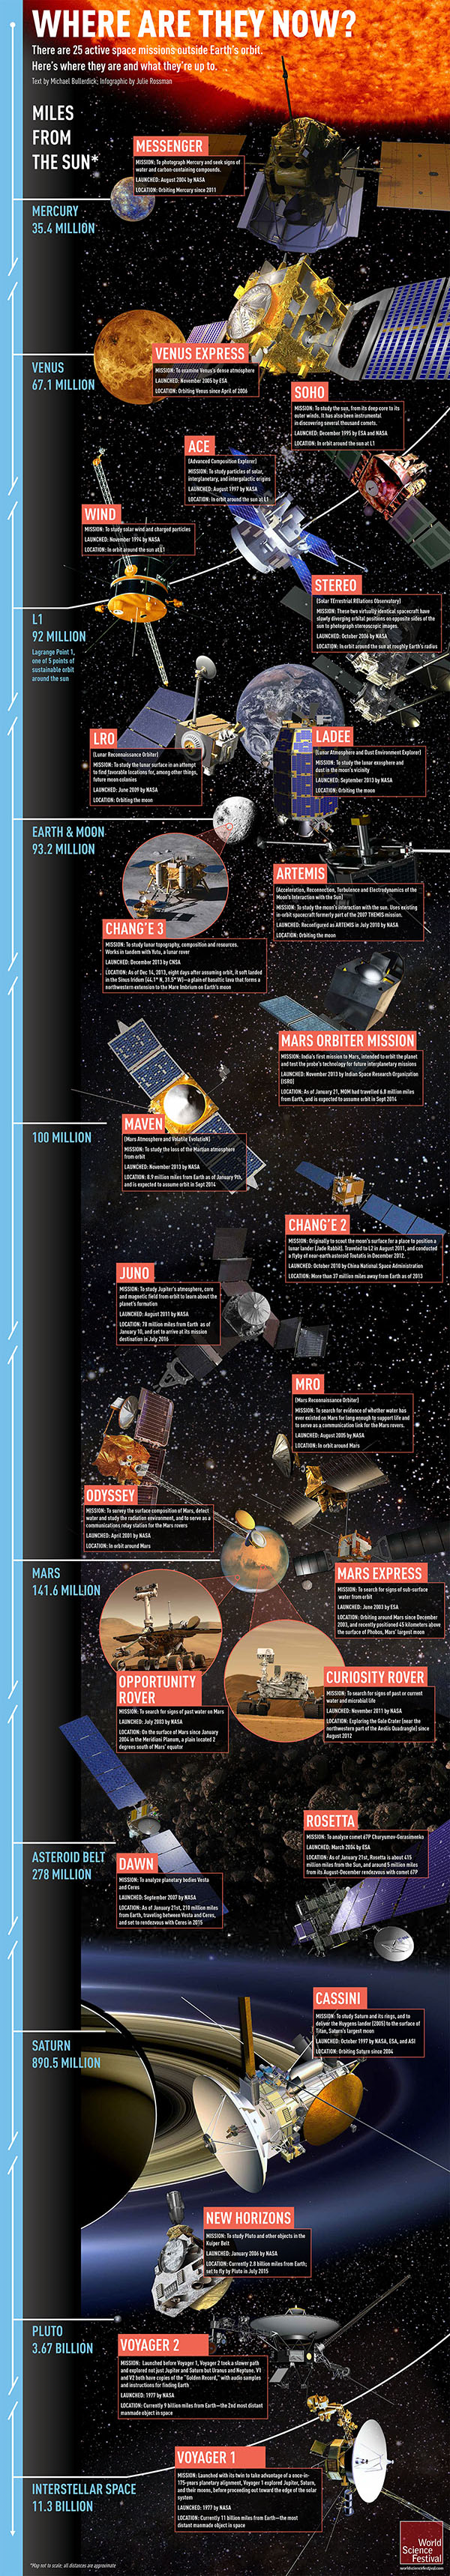 Le 25 missioni spaziali attive in un'infografica